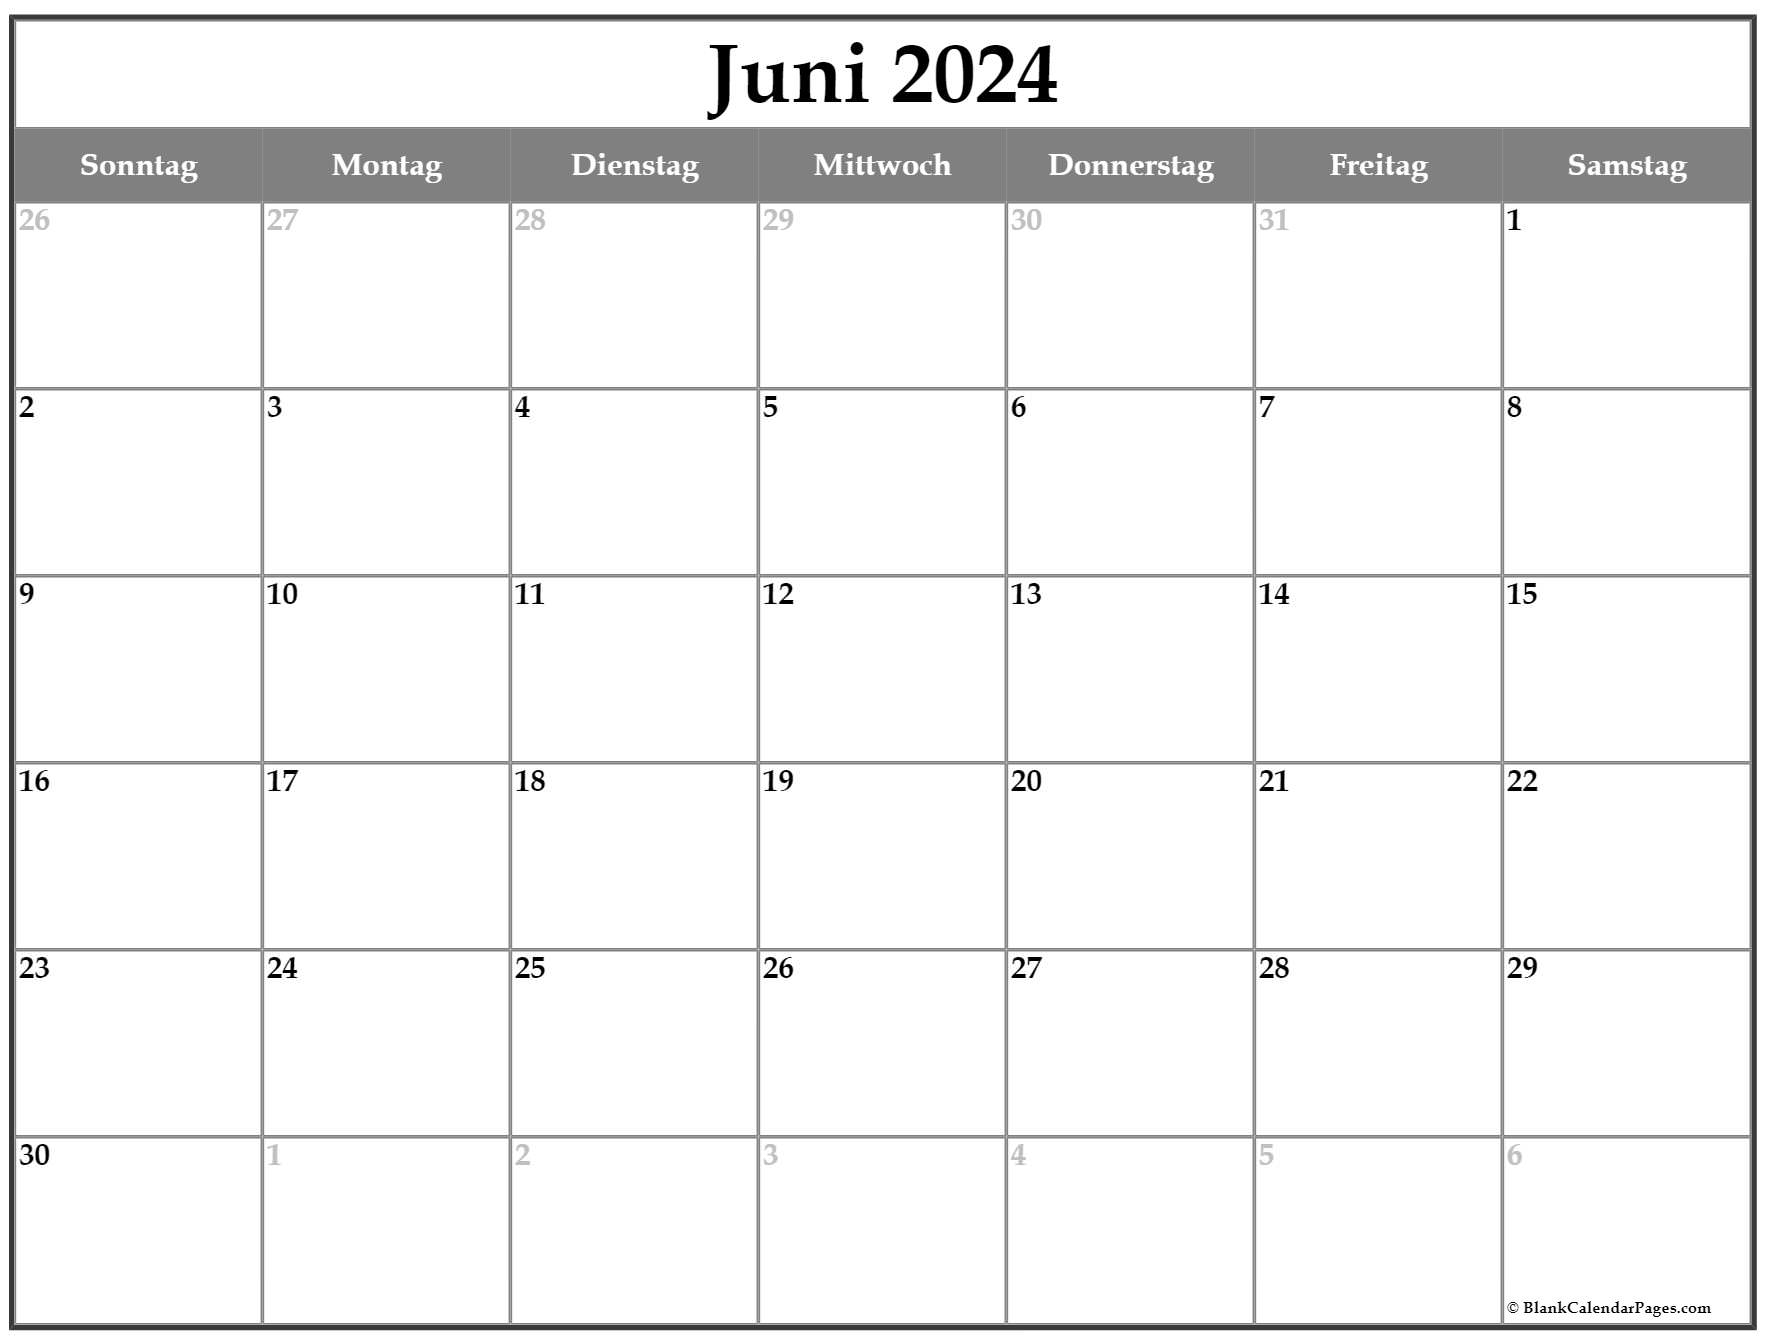 Juni 2024 kalender auf Deutsch kalender 2024